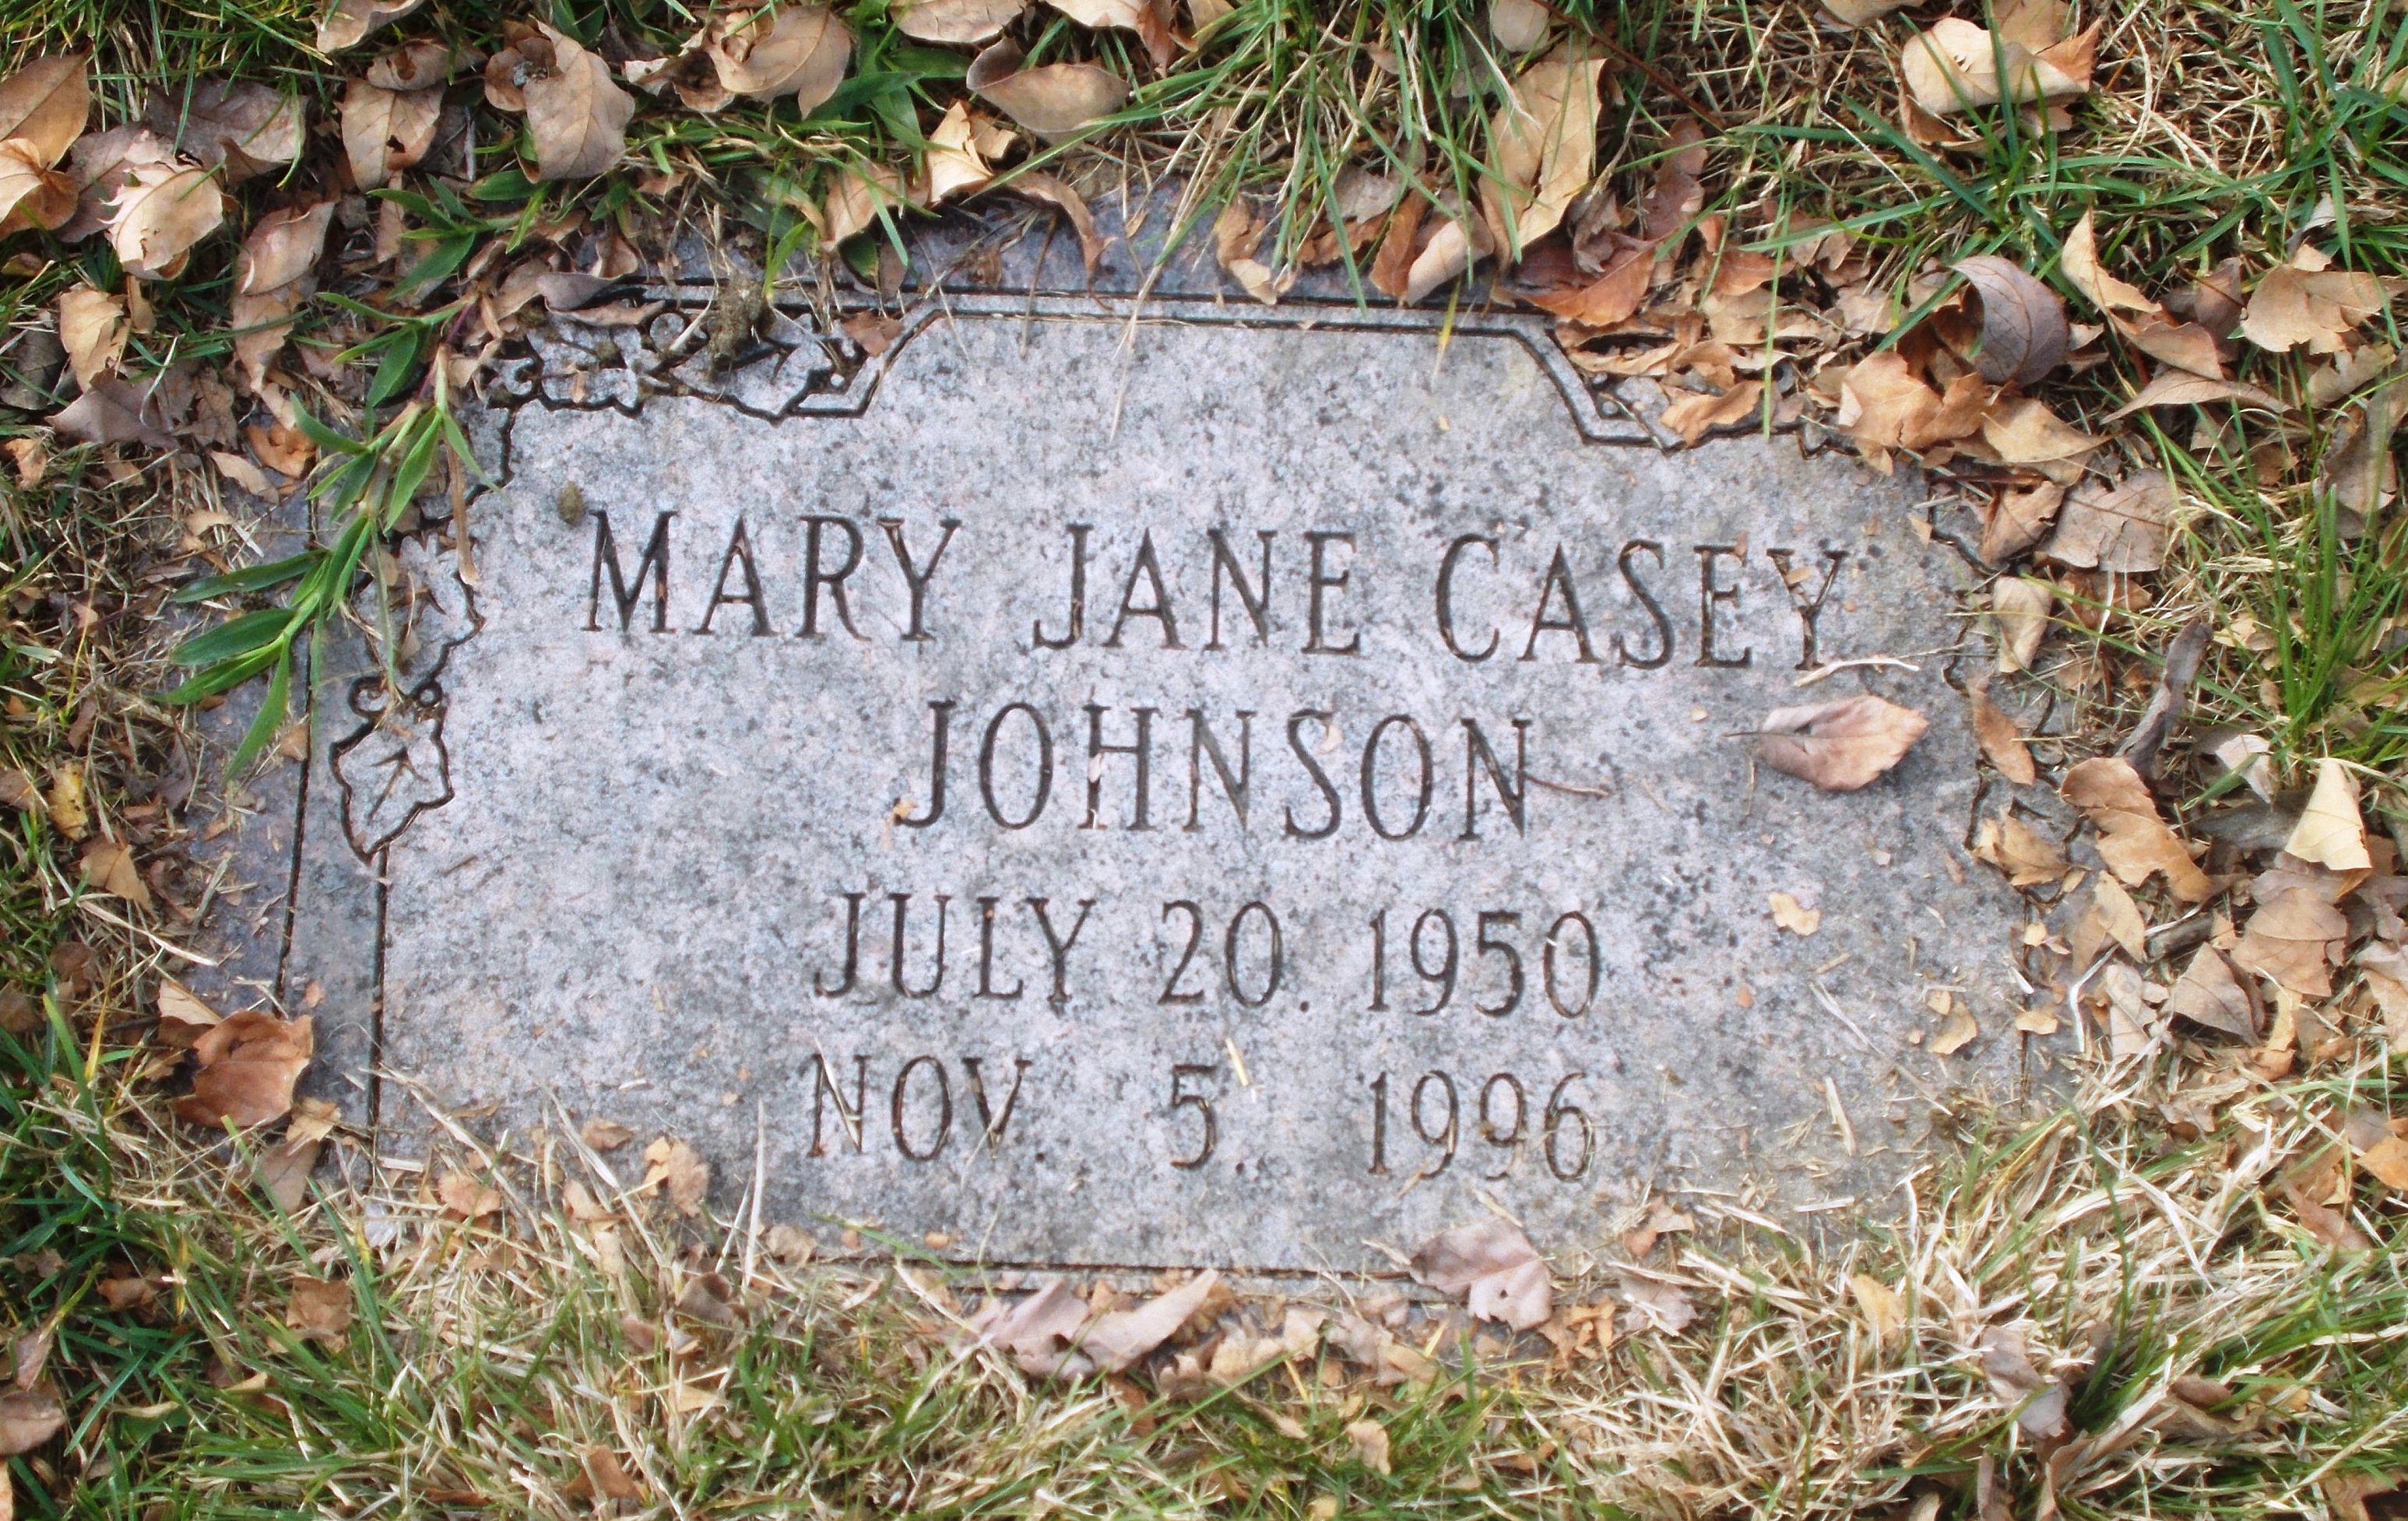 Mary Jane Casey Johnson